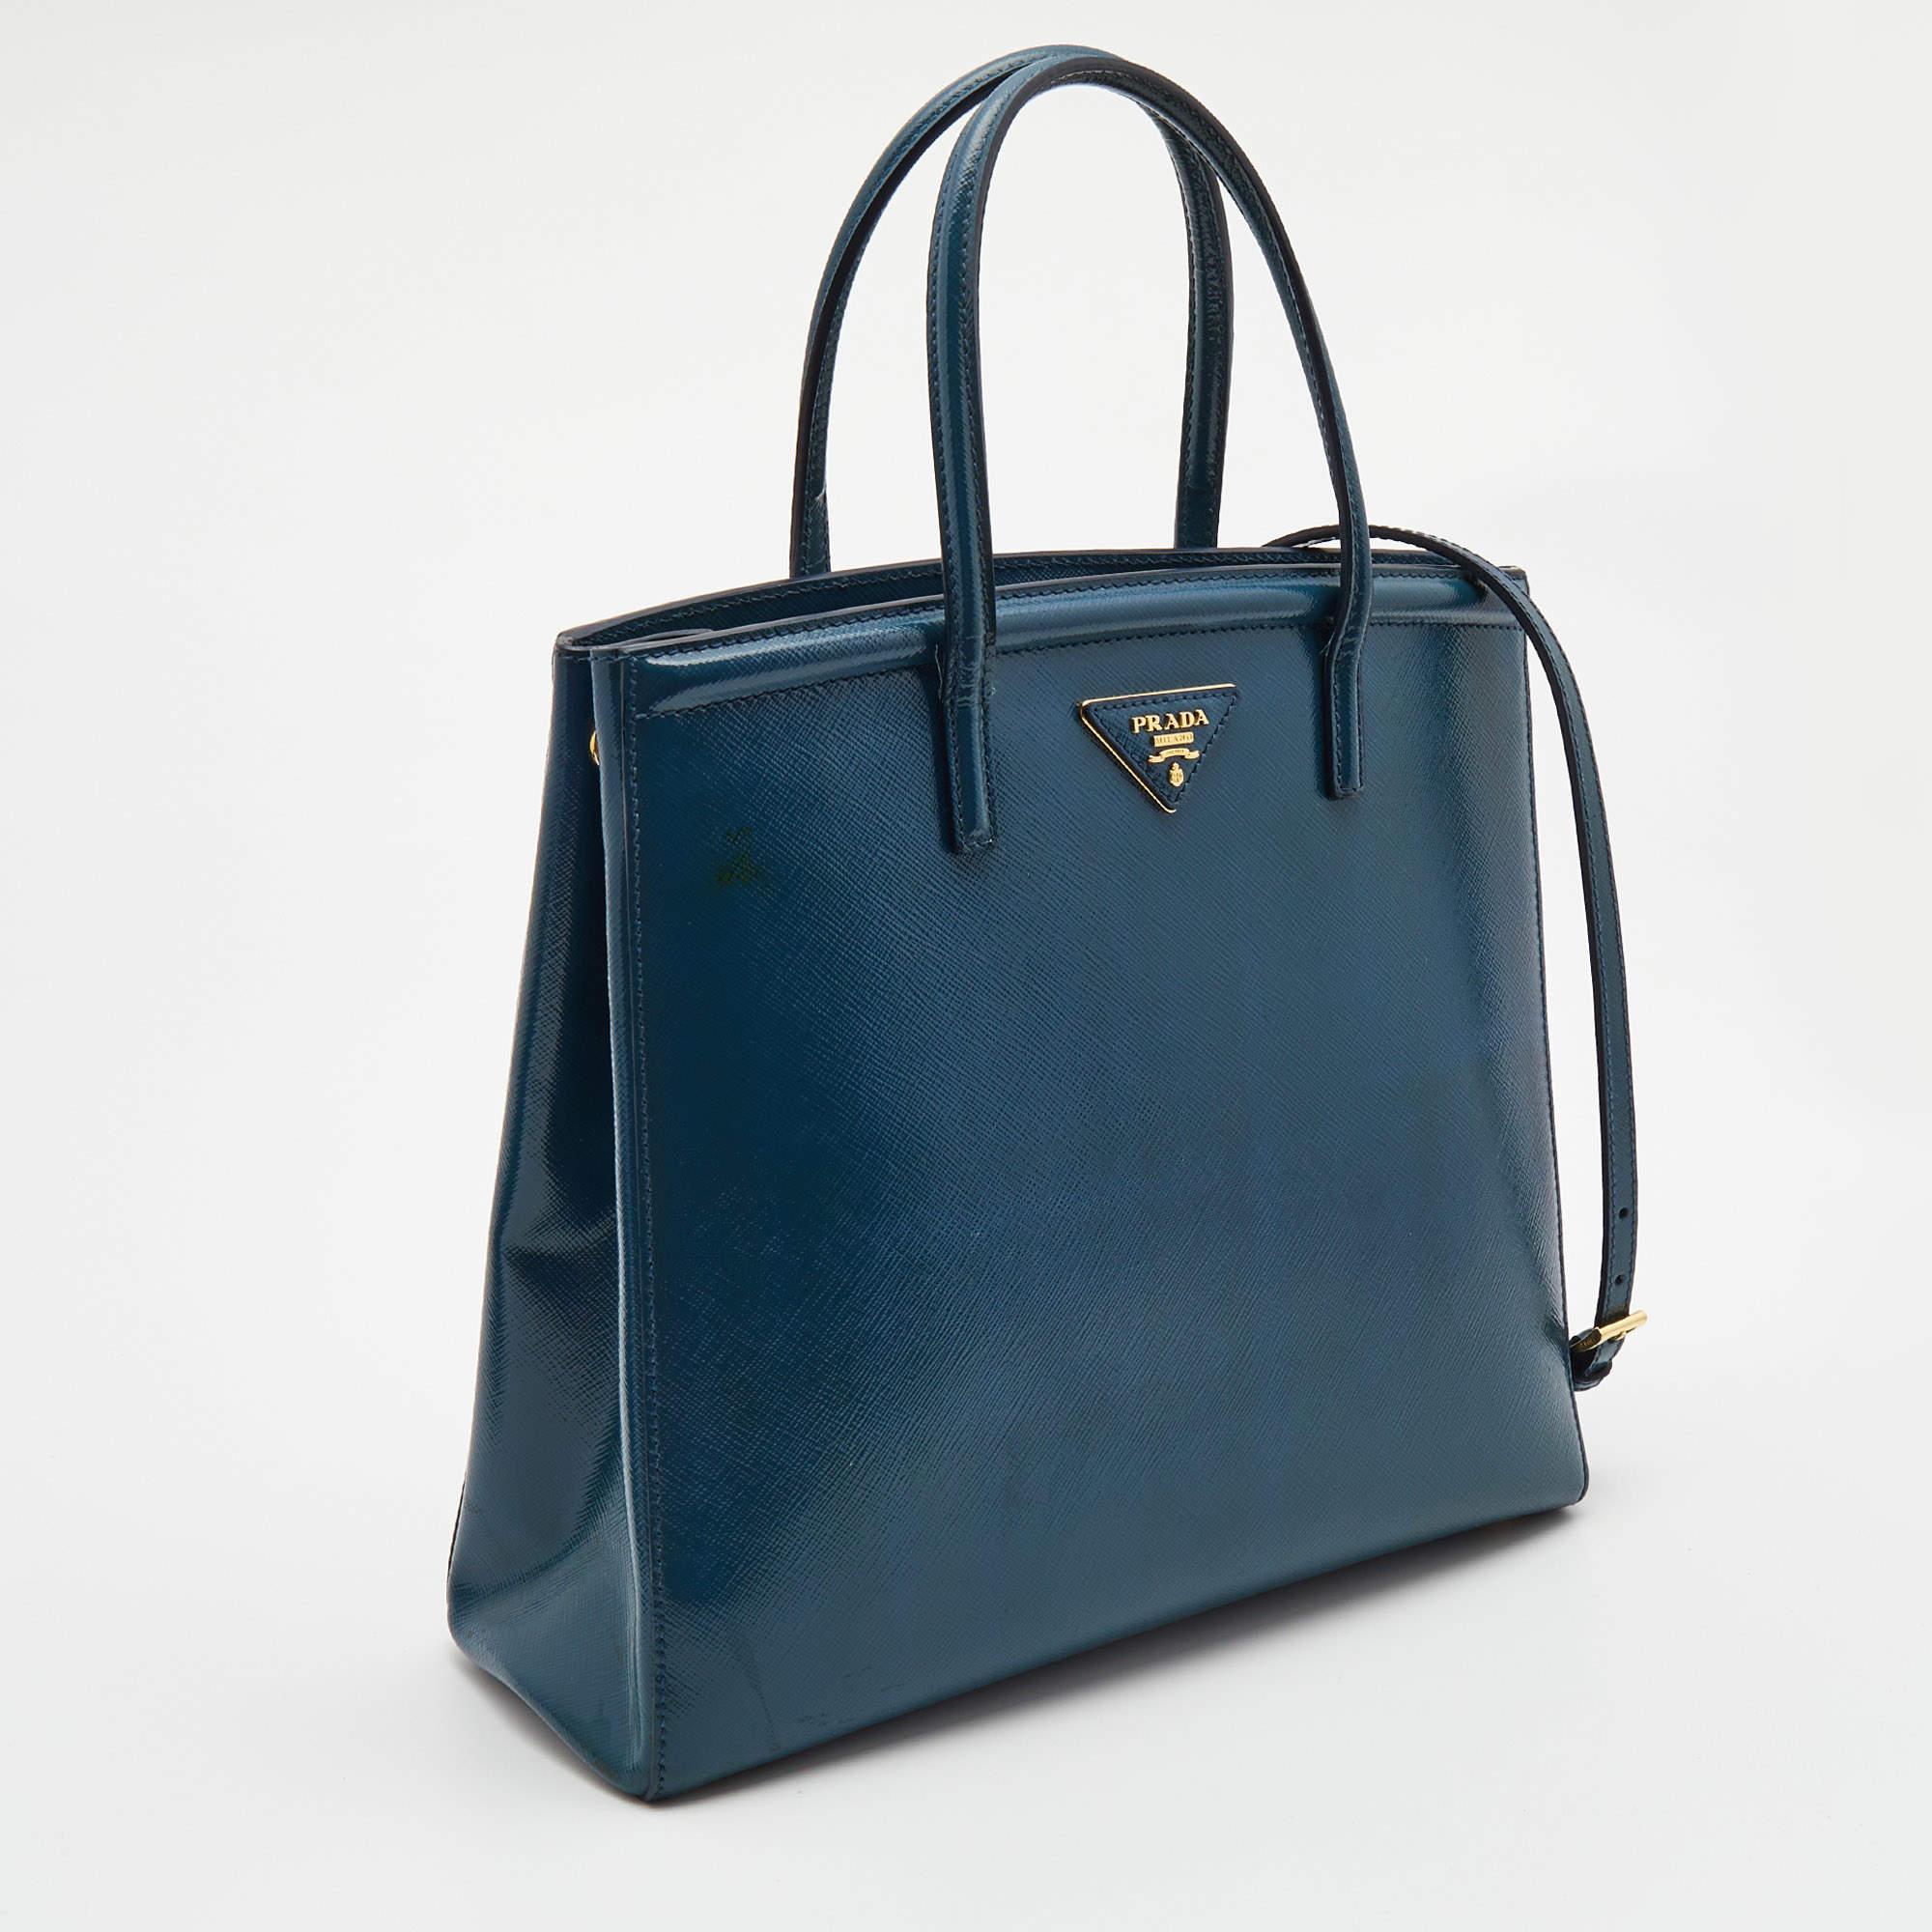 Women's Prada Teal Blue Saffiano Vernice Leather Parabole Tote